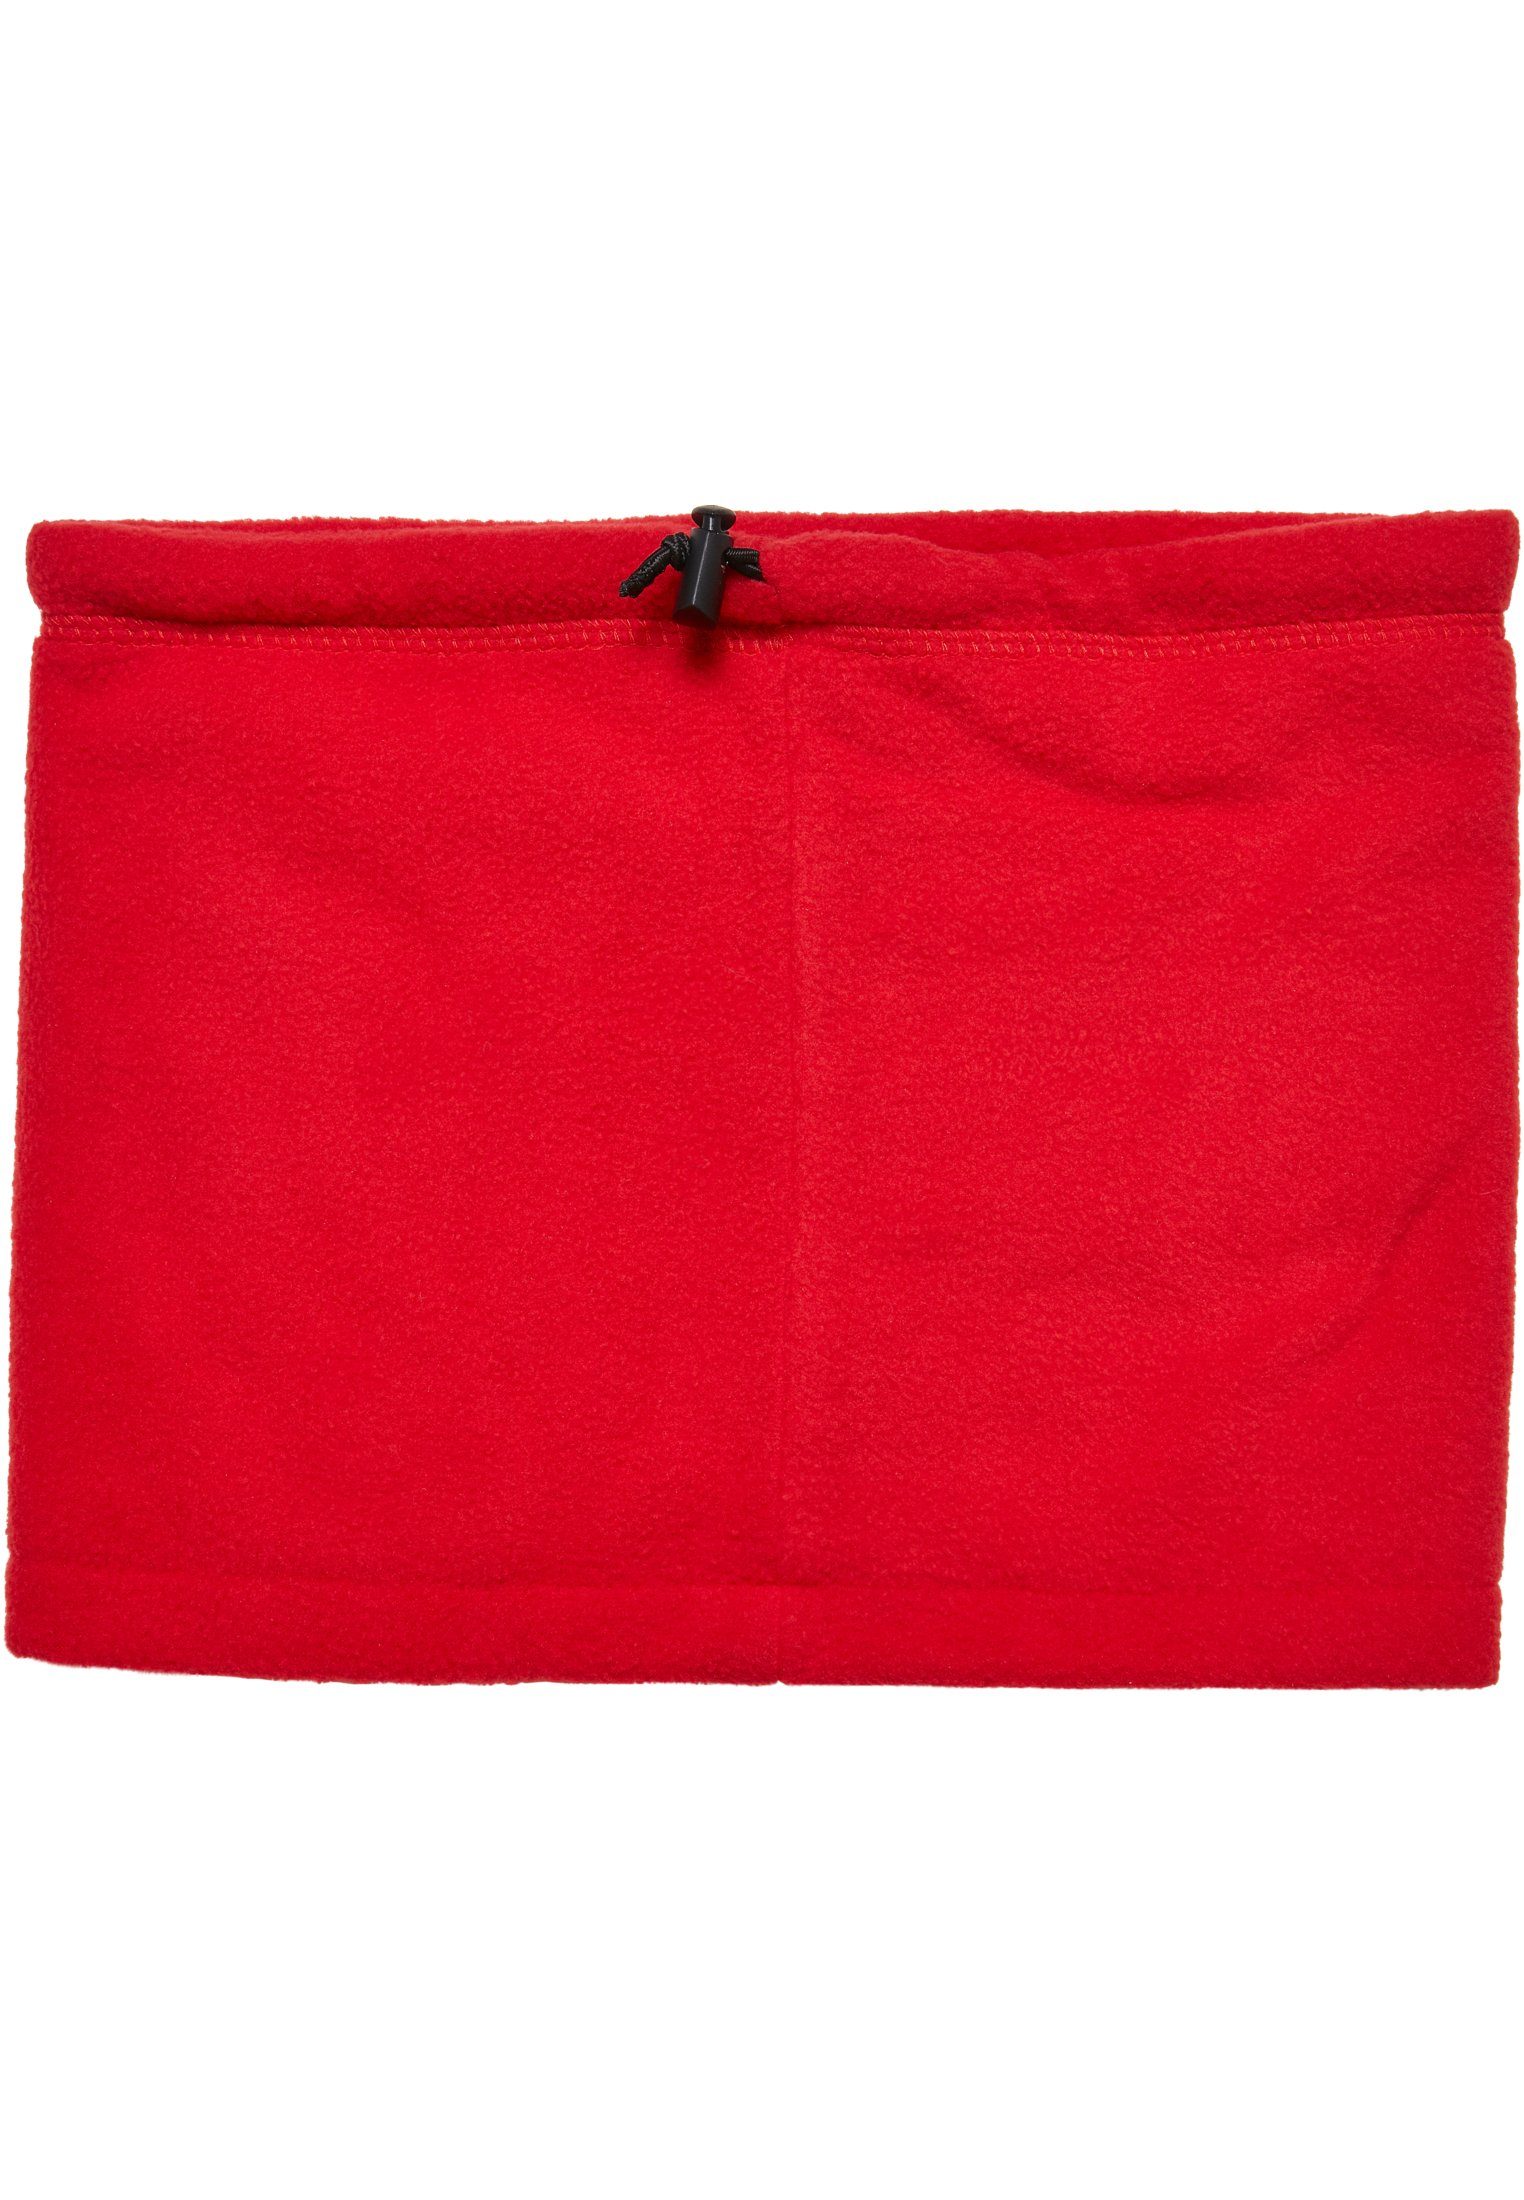 MisterTee NASA red Accessoires Fleece Baumwollhandschuhe Set